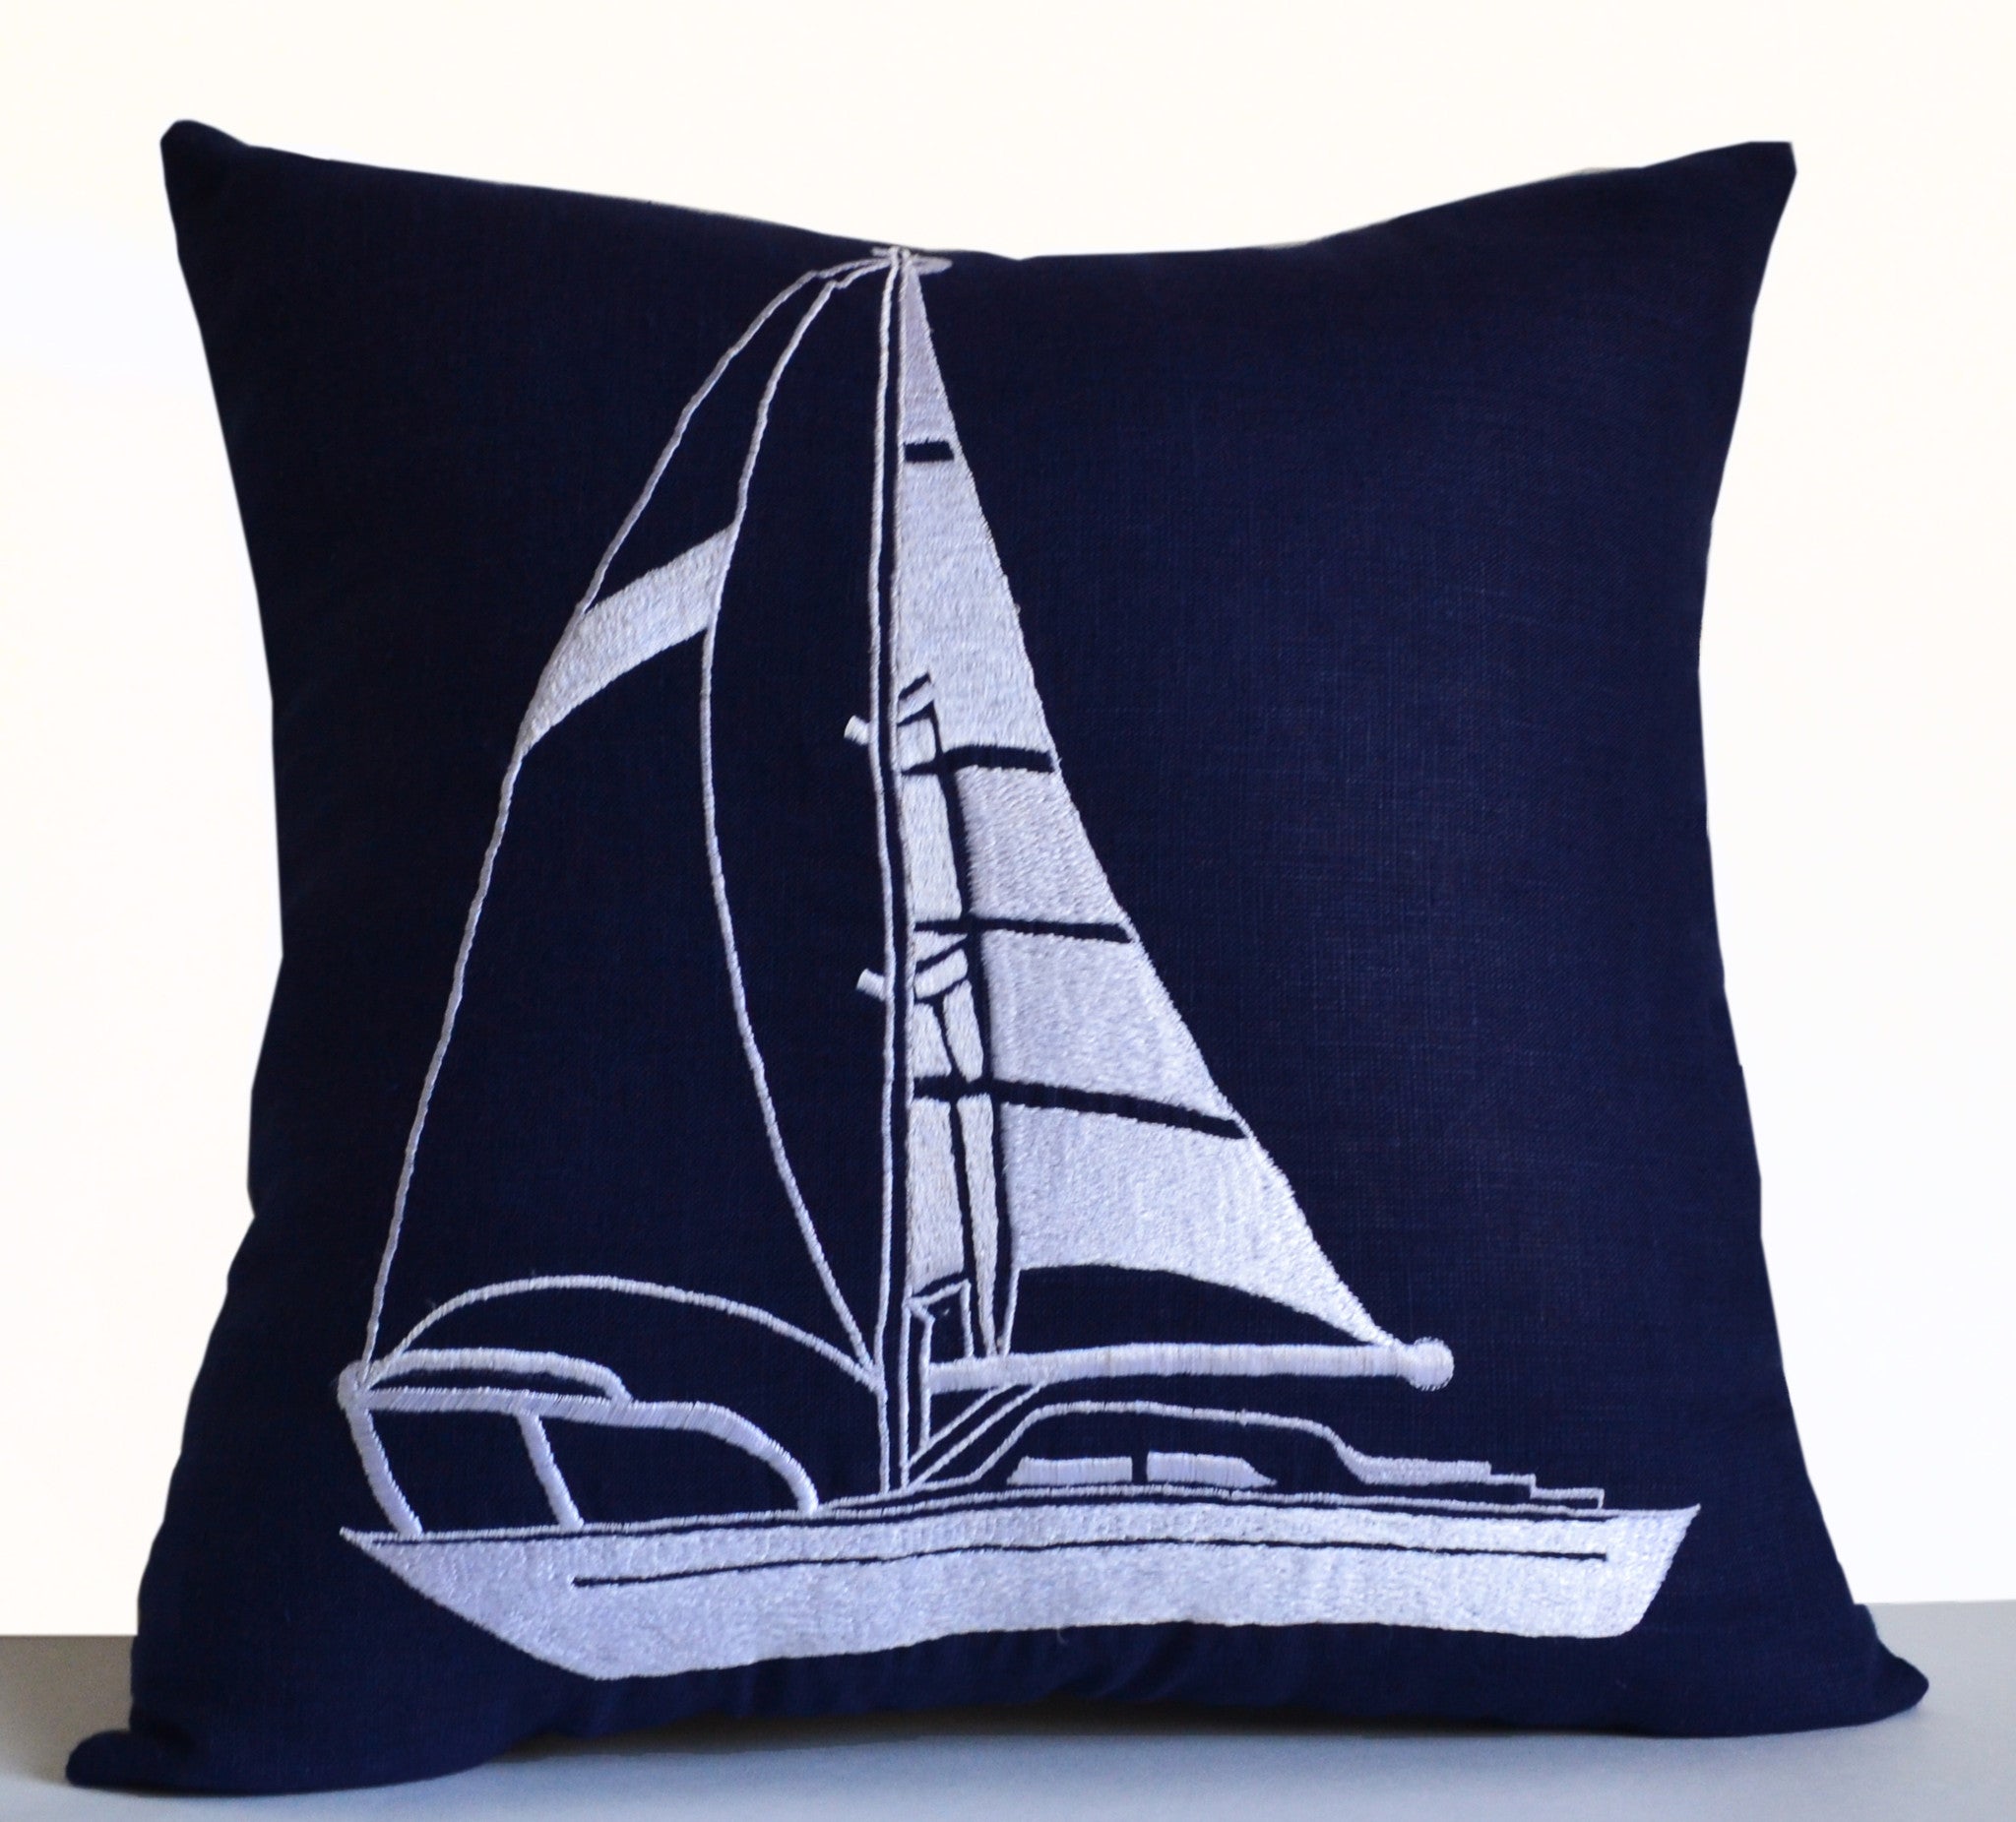 Handmade navy blue linen throw pillow with yacht motif